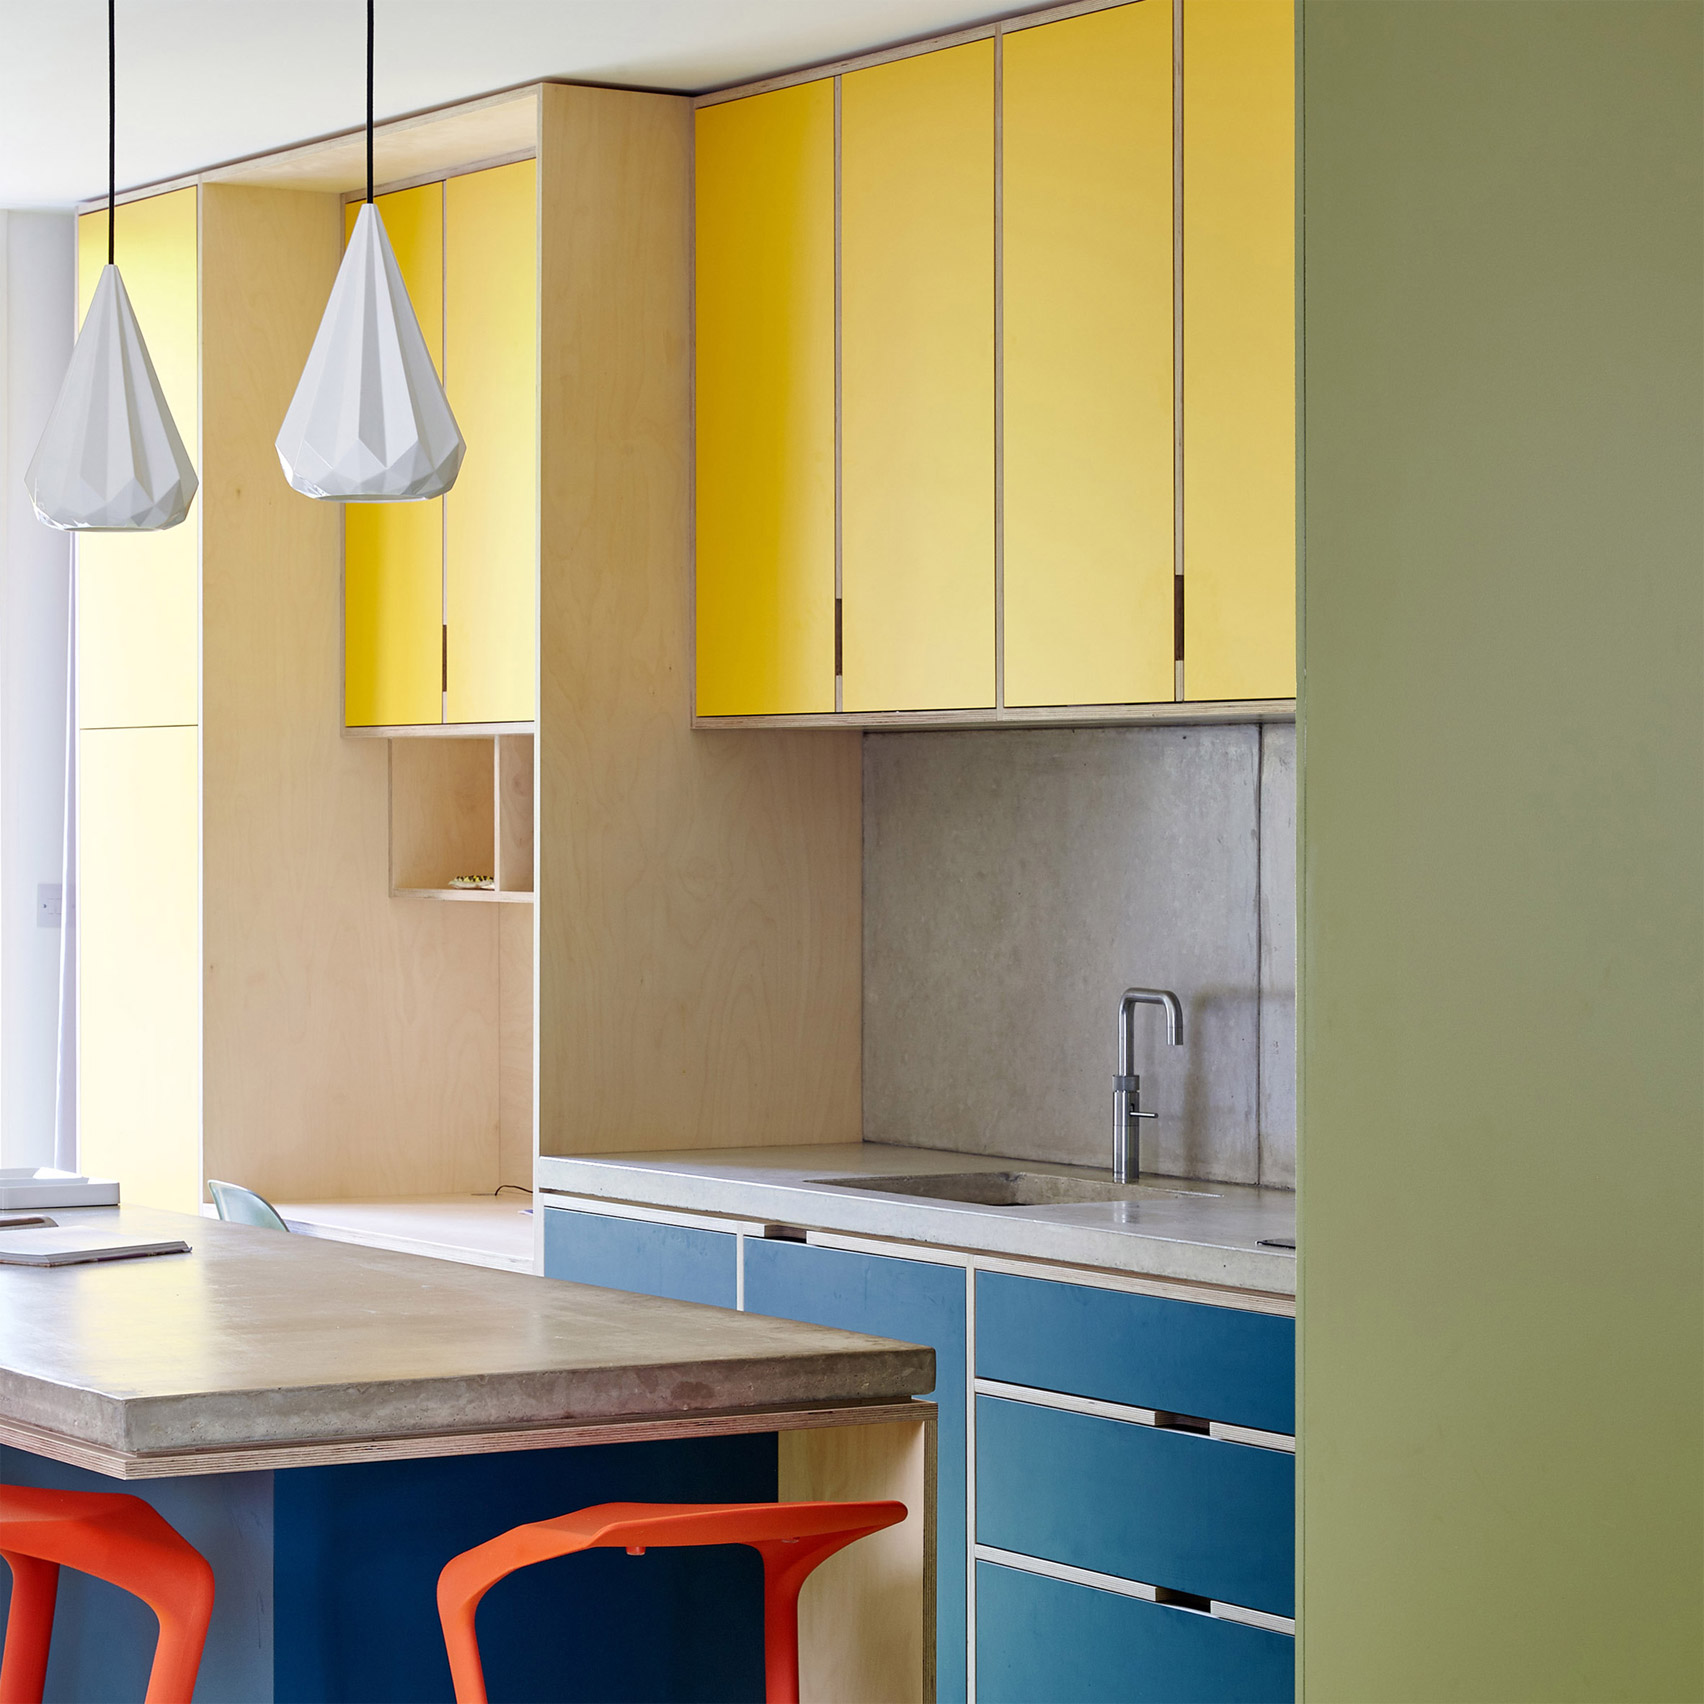 Multi-coloured kitchen with concrete countertops